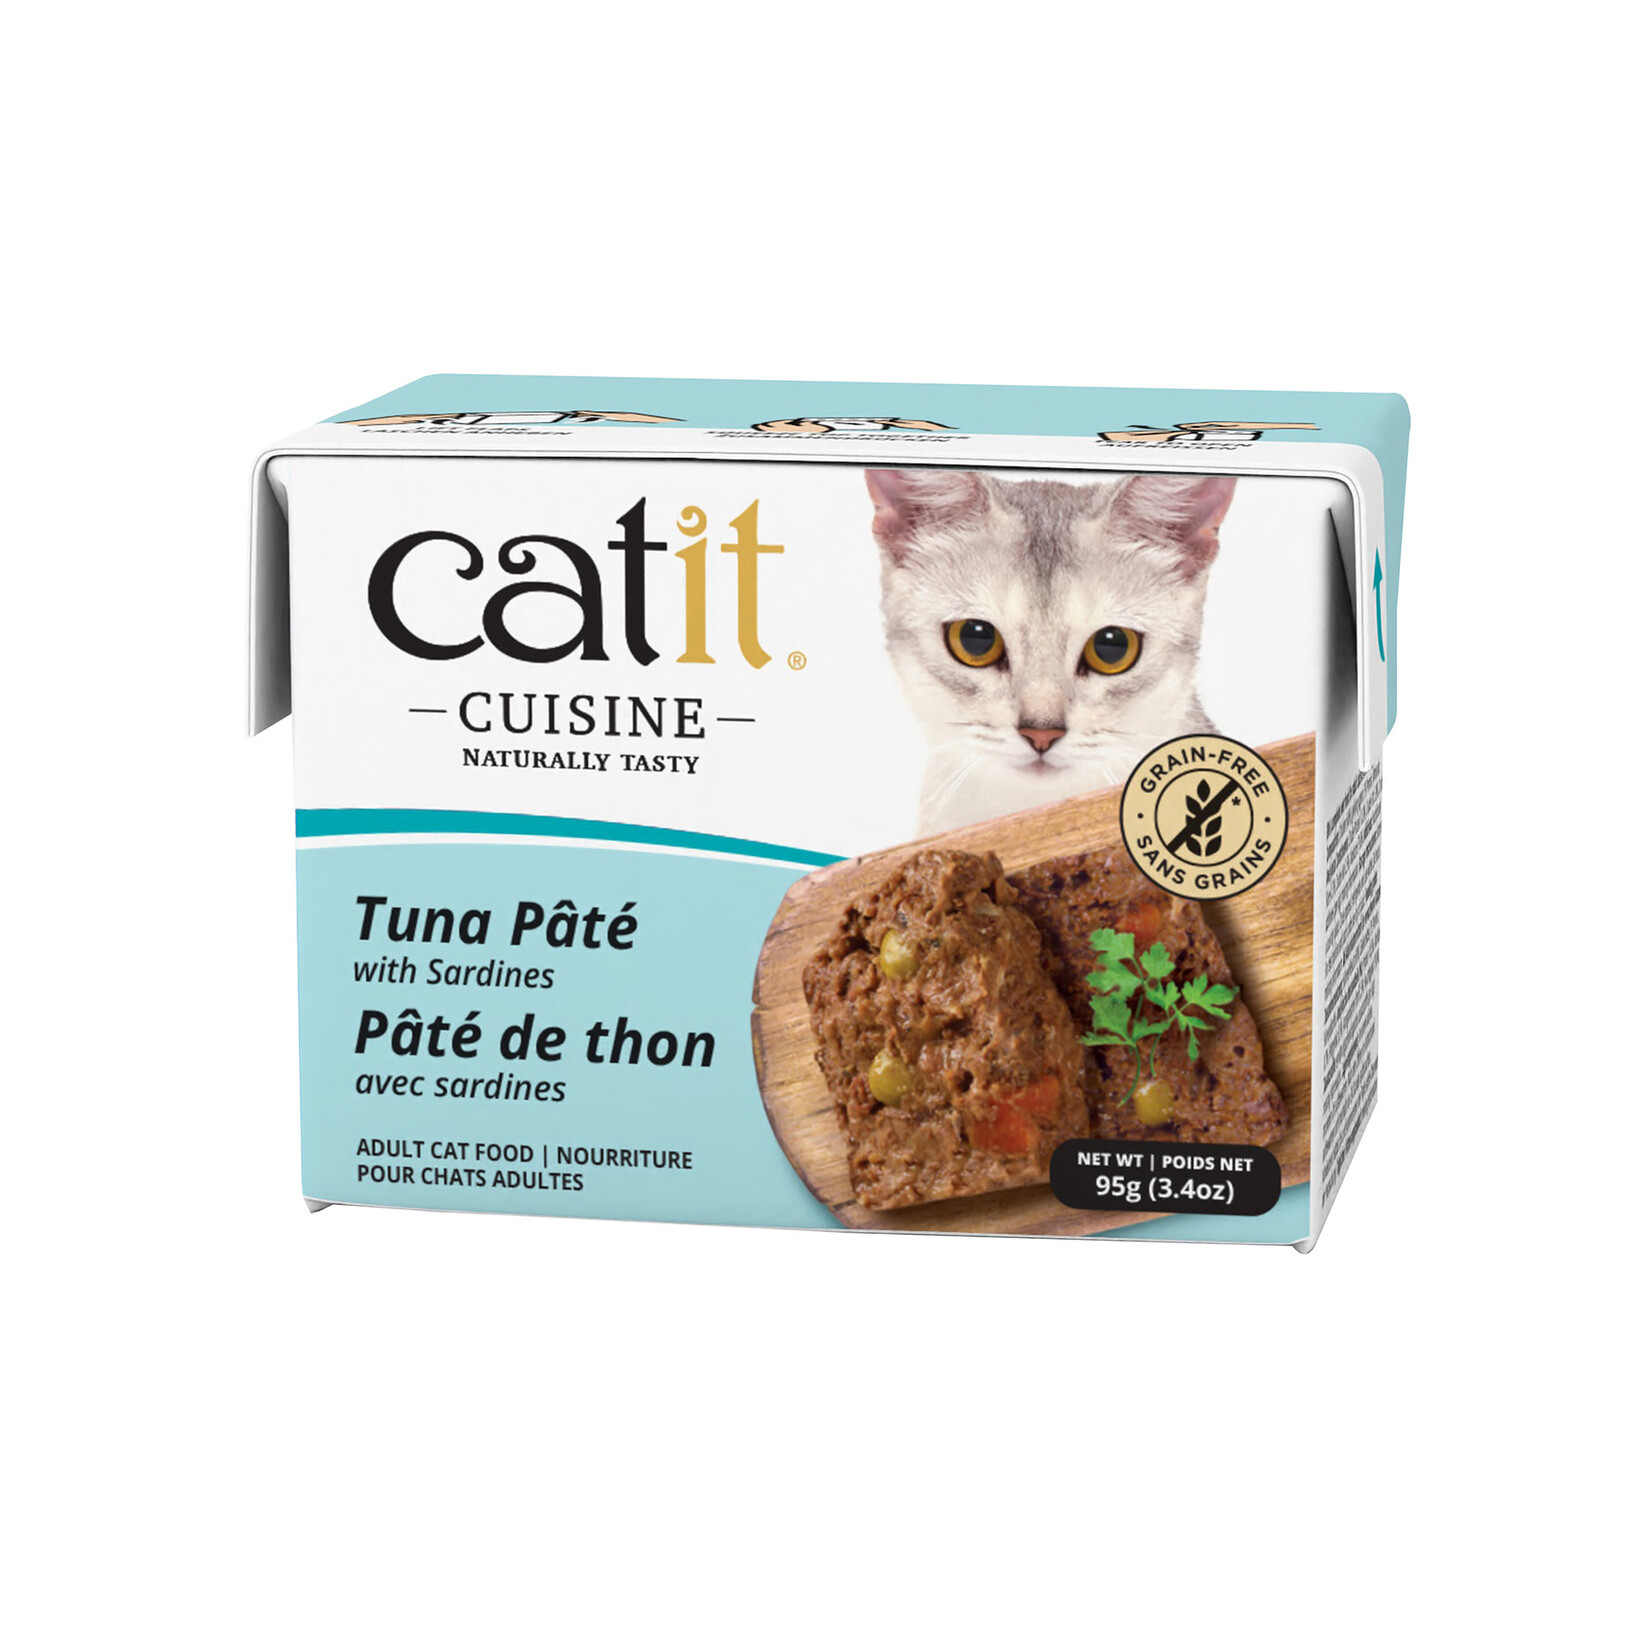 CAT IT Catit Cuisine Tuna Pâté with Sardines - 95 g